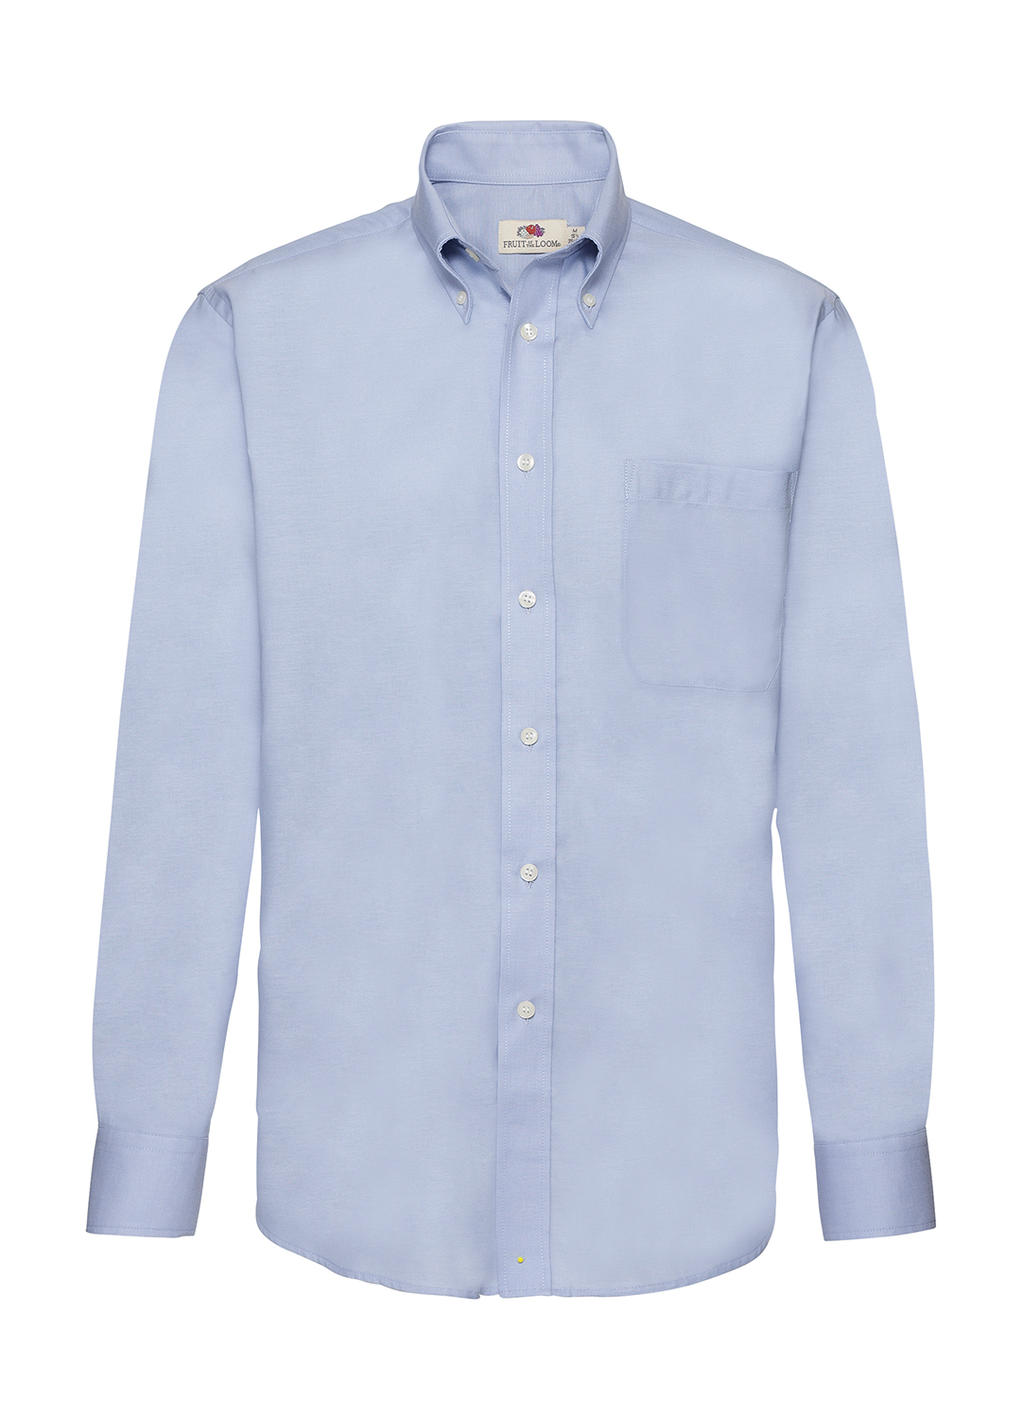 Pánska košeľa Oxford s dlhými rukávmi - oxford blue